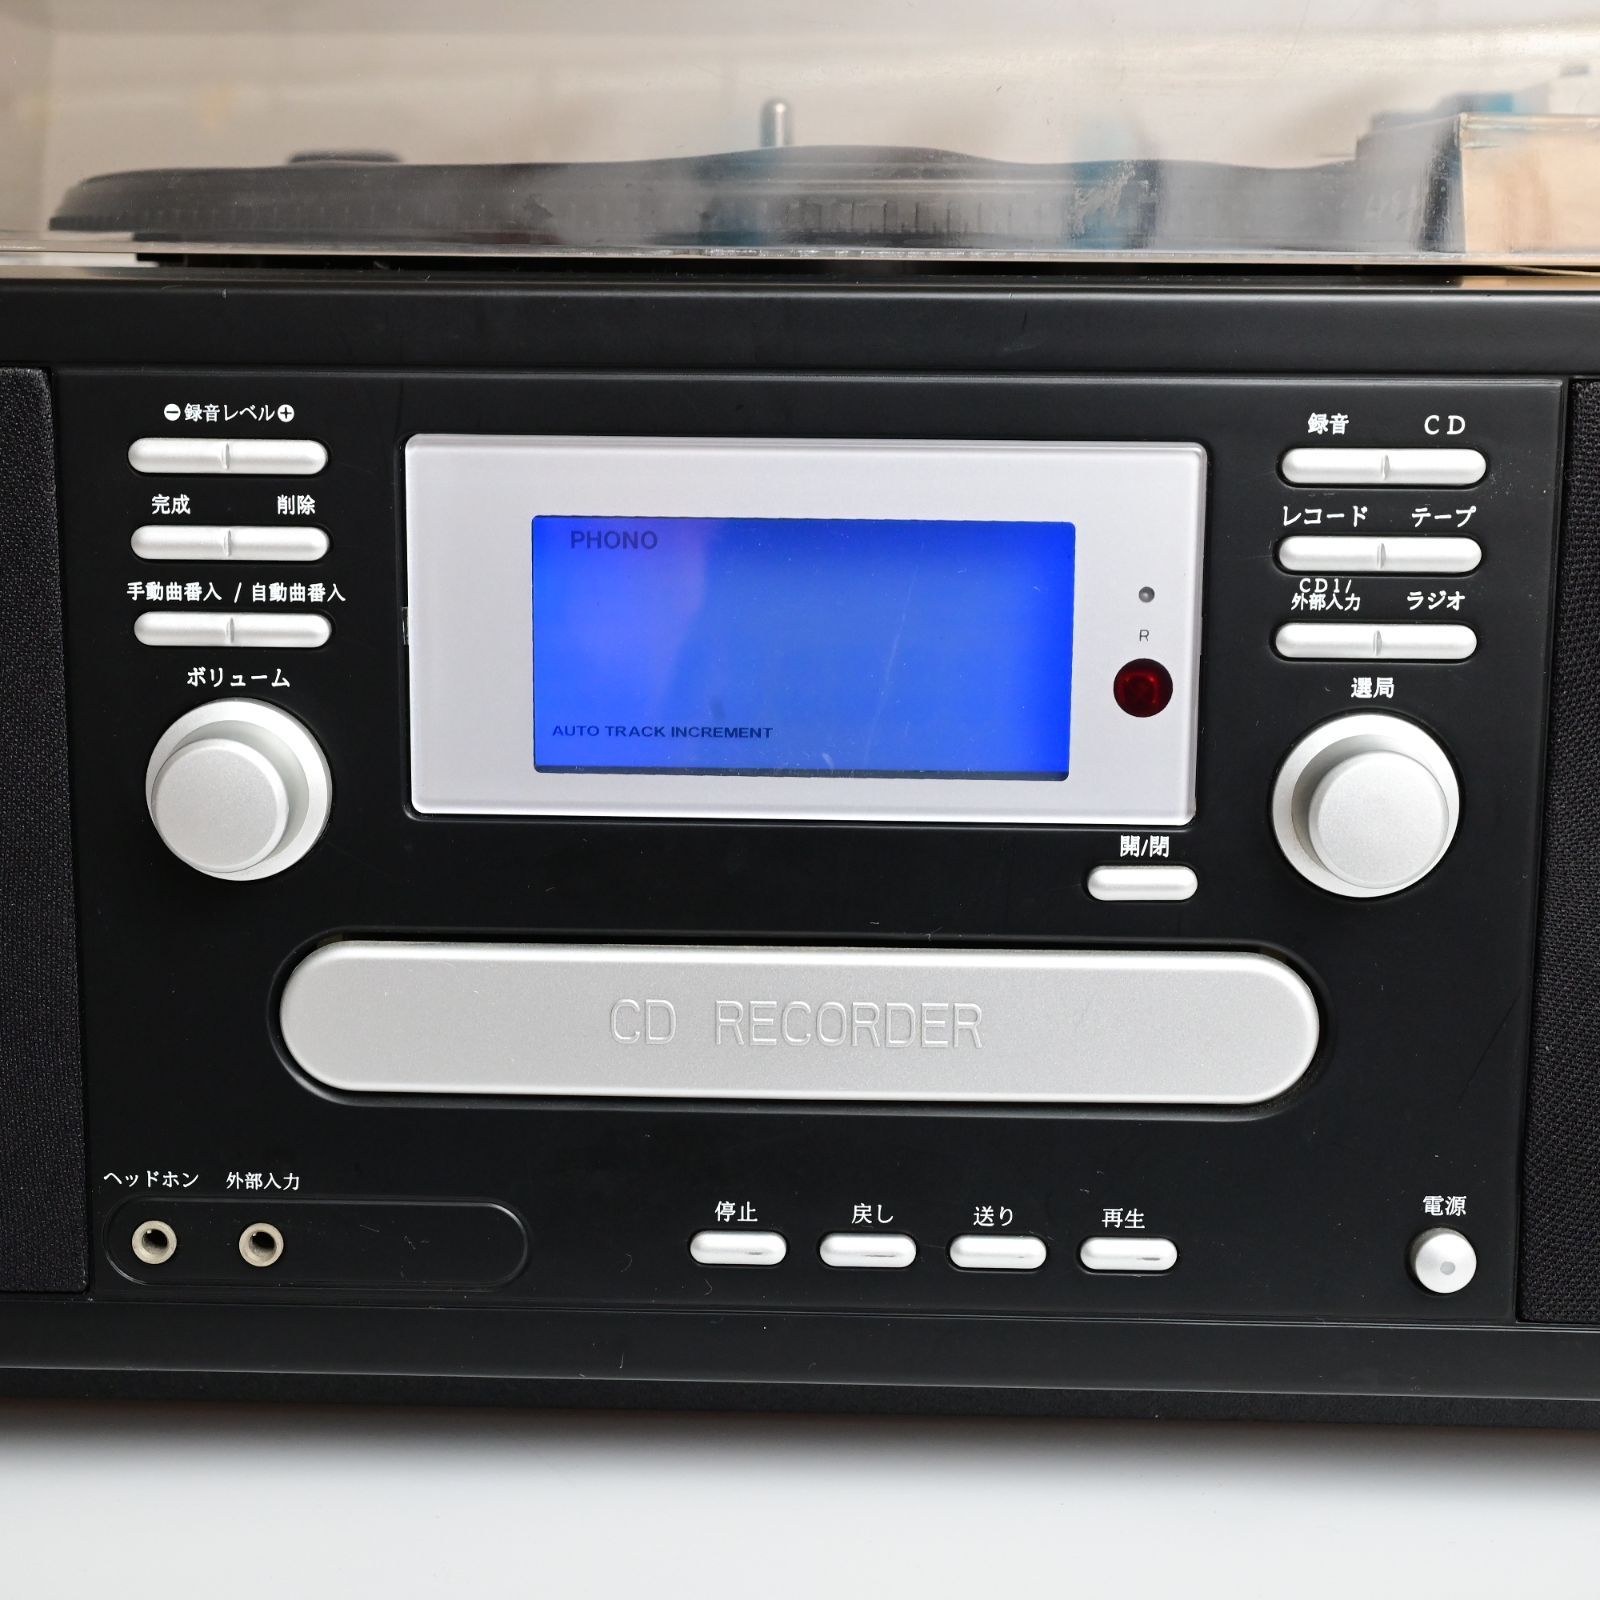 とうしょう マルチプレーヤー TS-6885 CD/ラジオ/レコード/カセット 